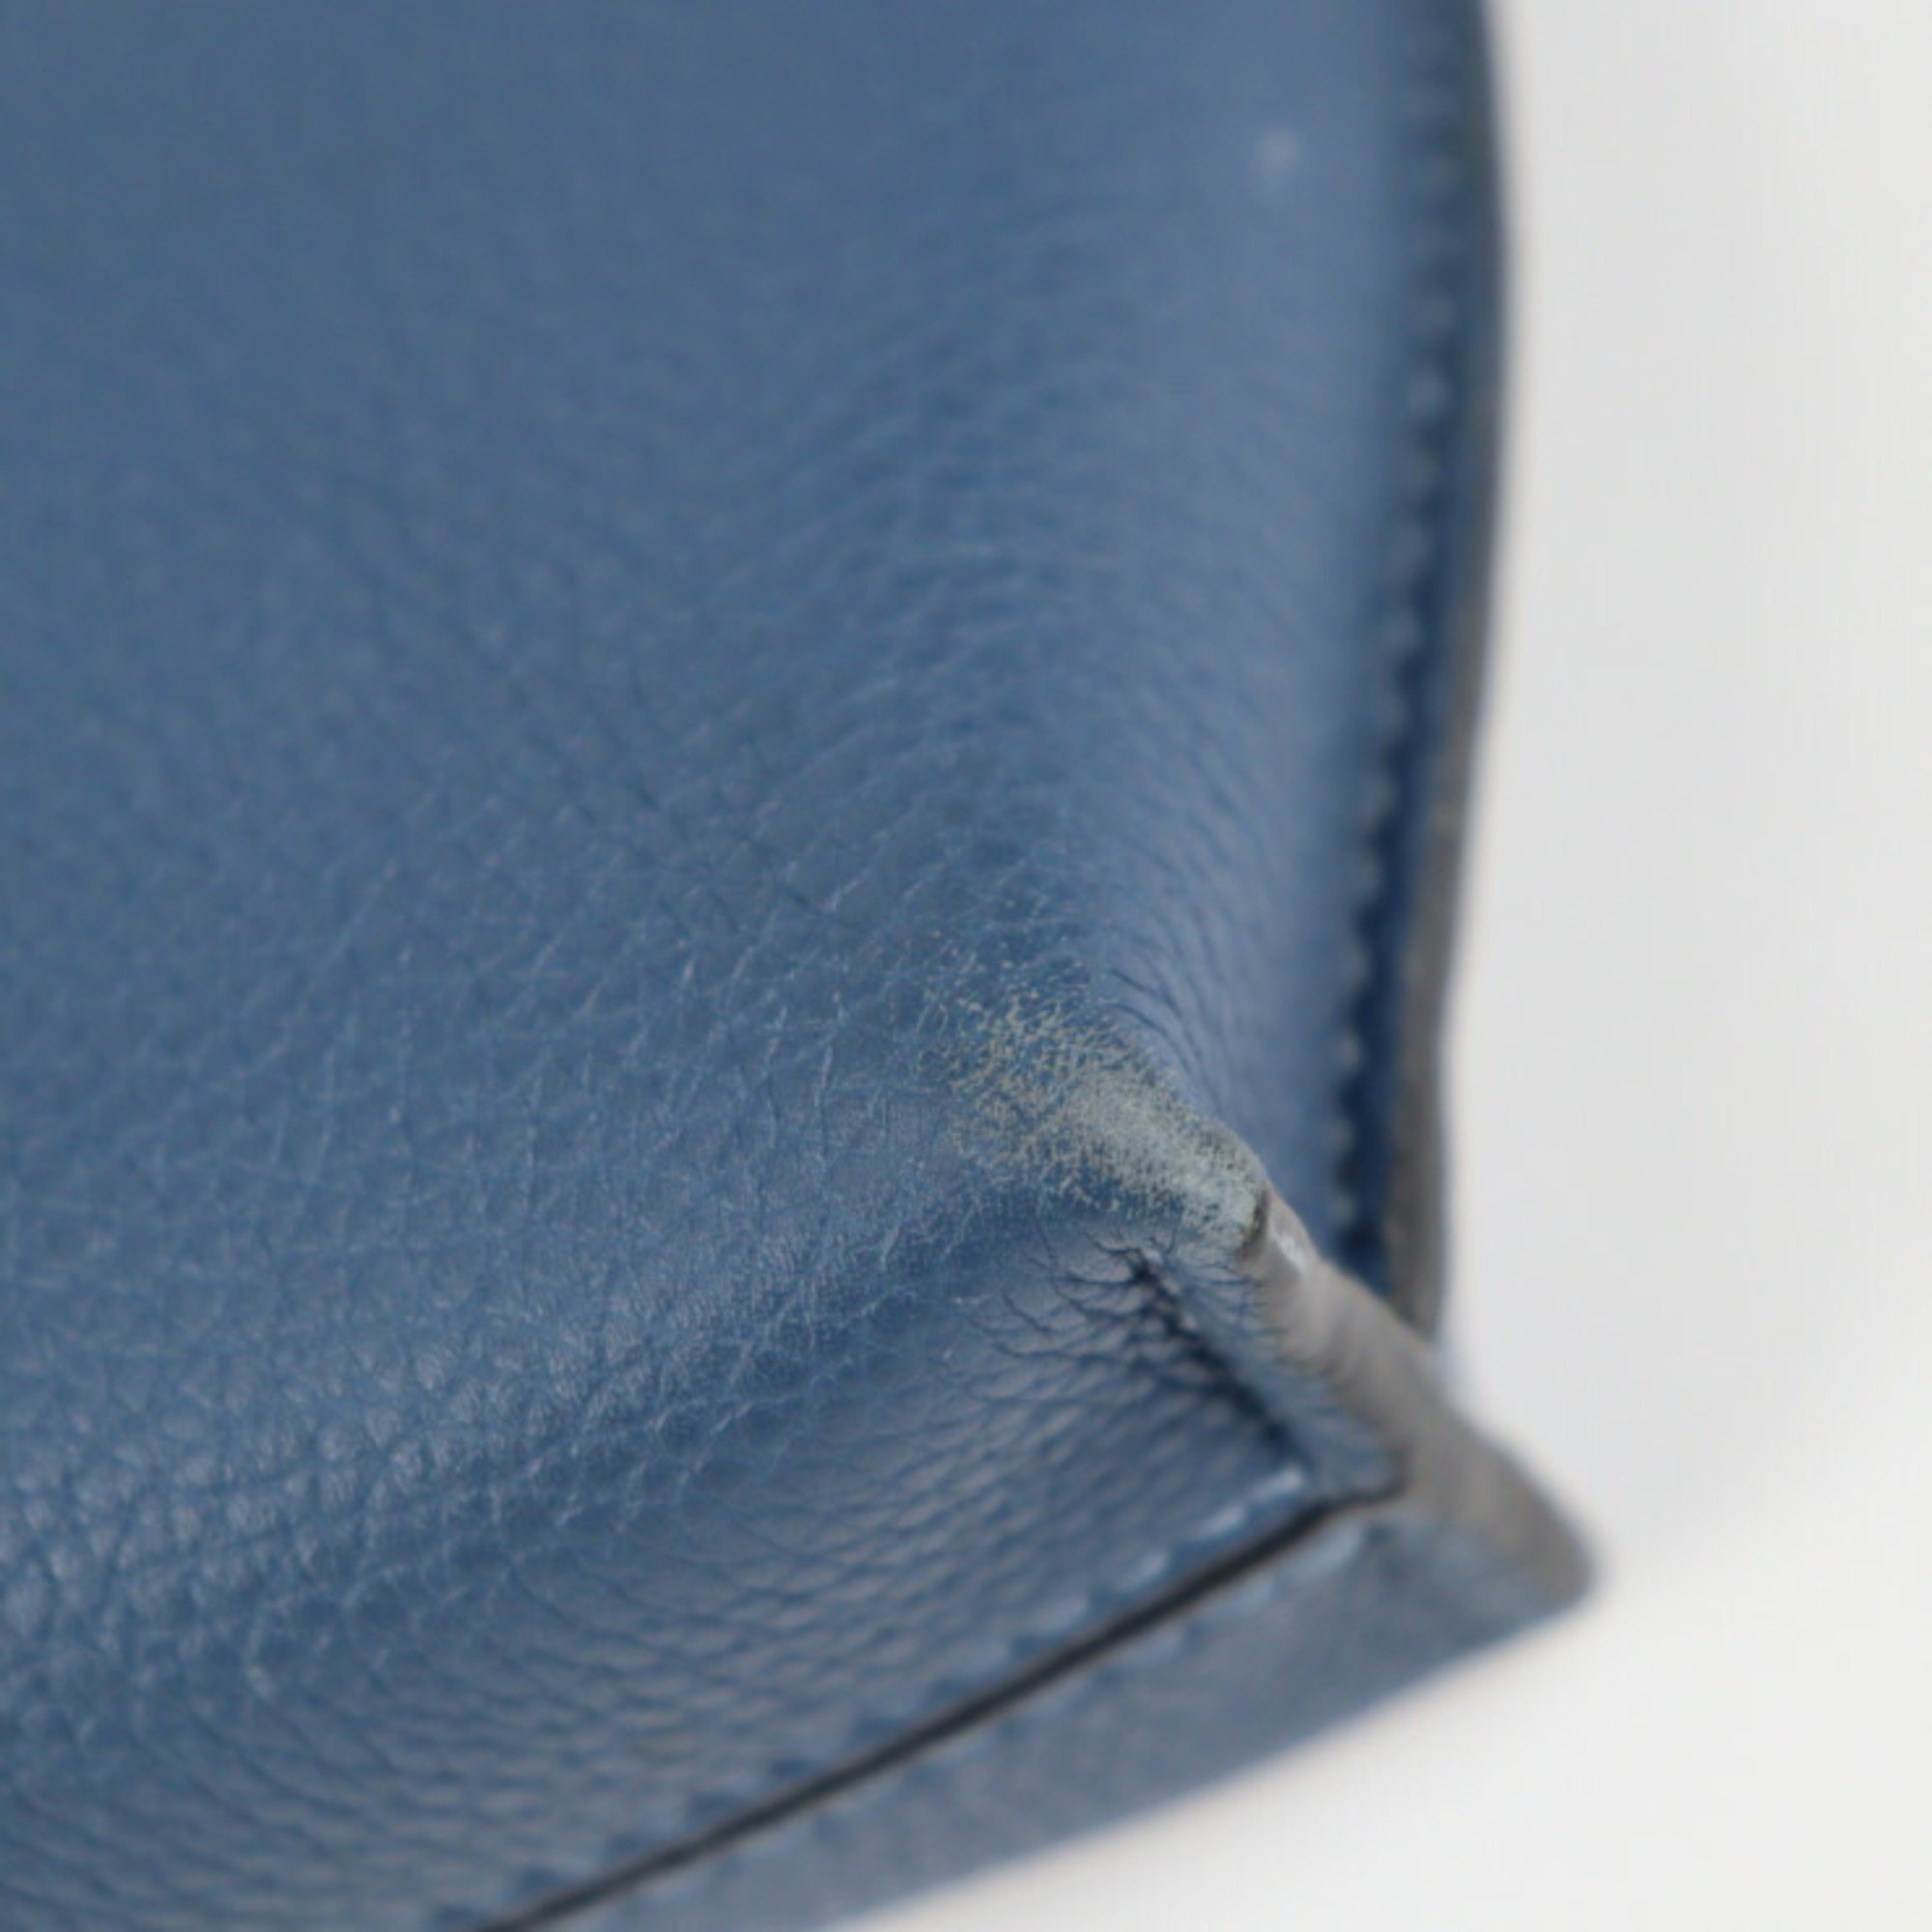 LOEWE Loewe Missy Small handbag 327.12KS28 leather blue system silver metal fittings 2WAY shoulder bag